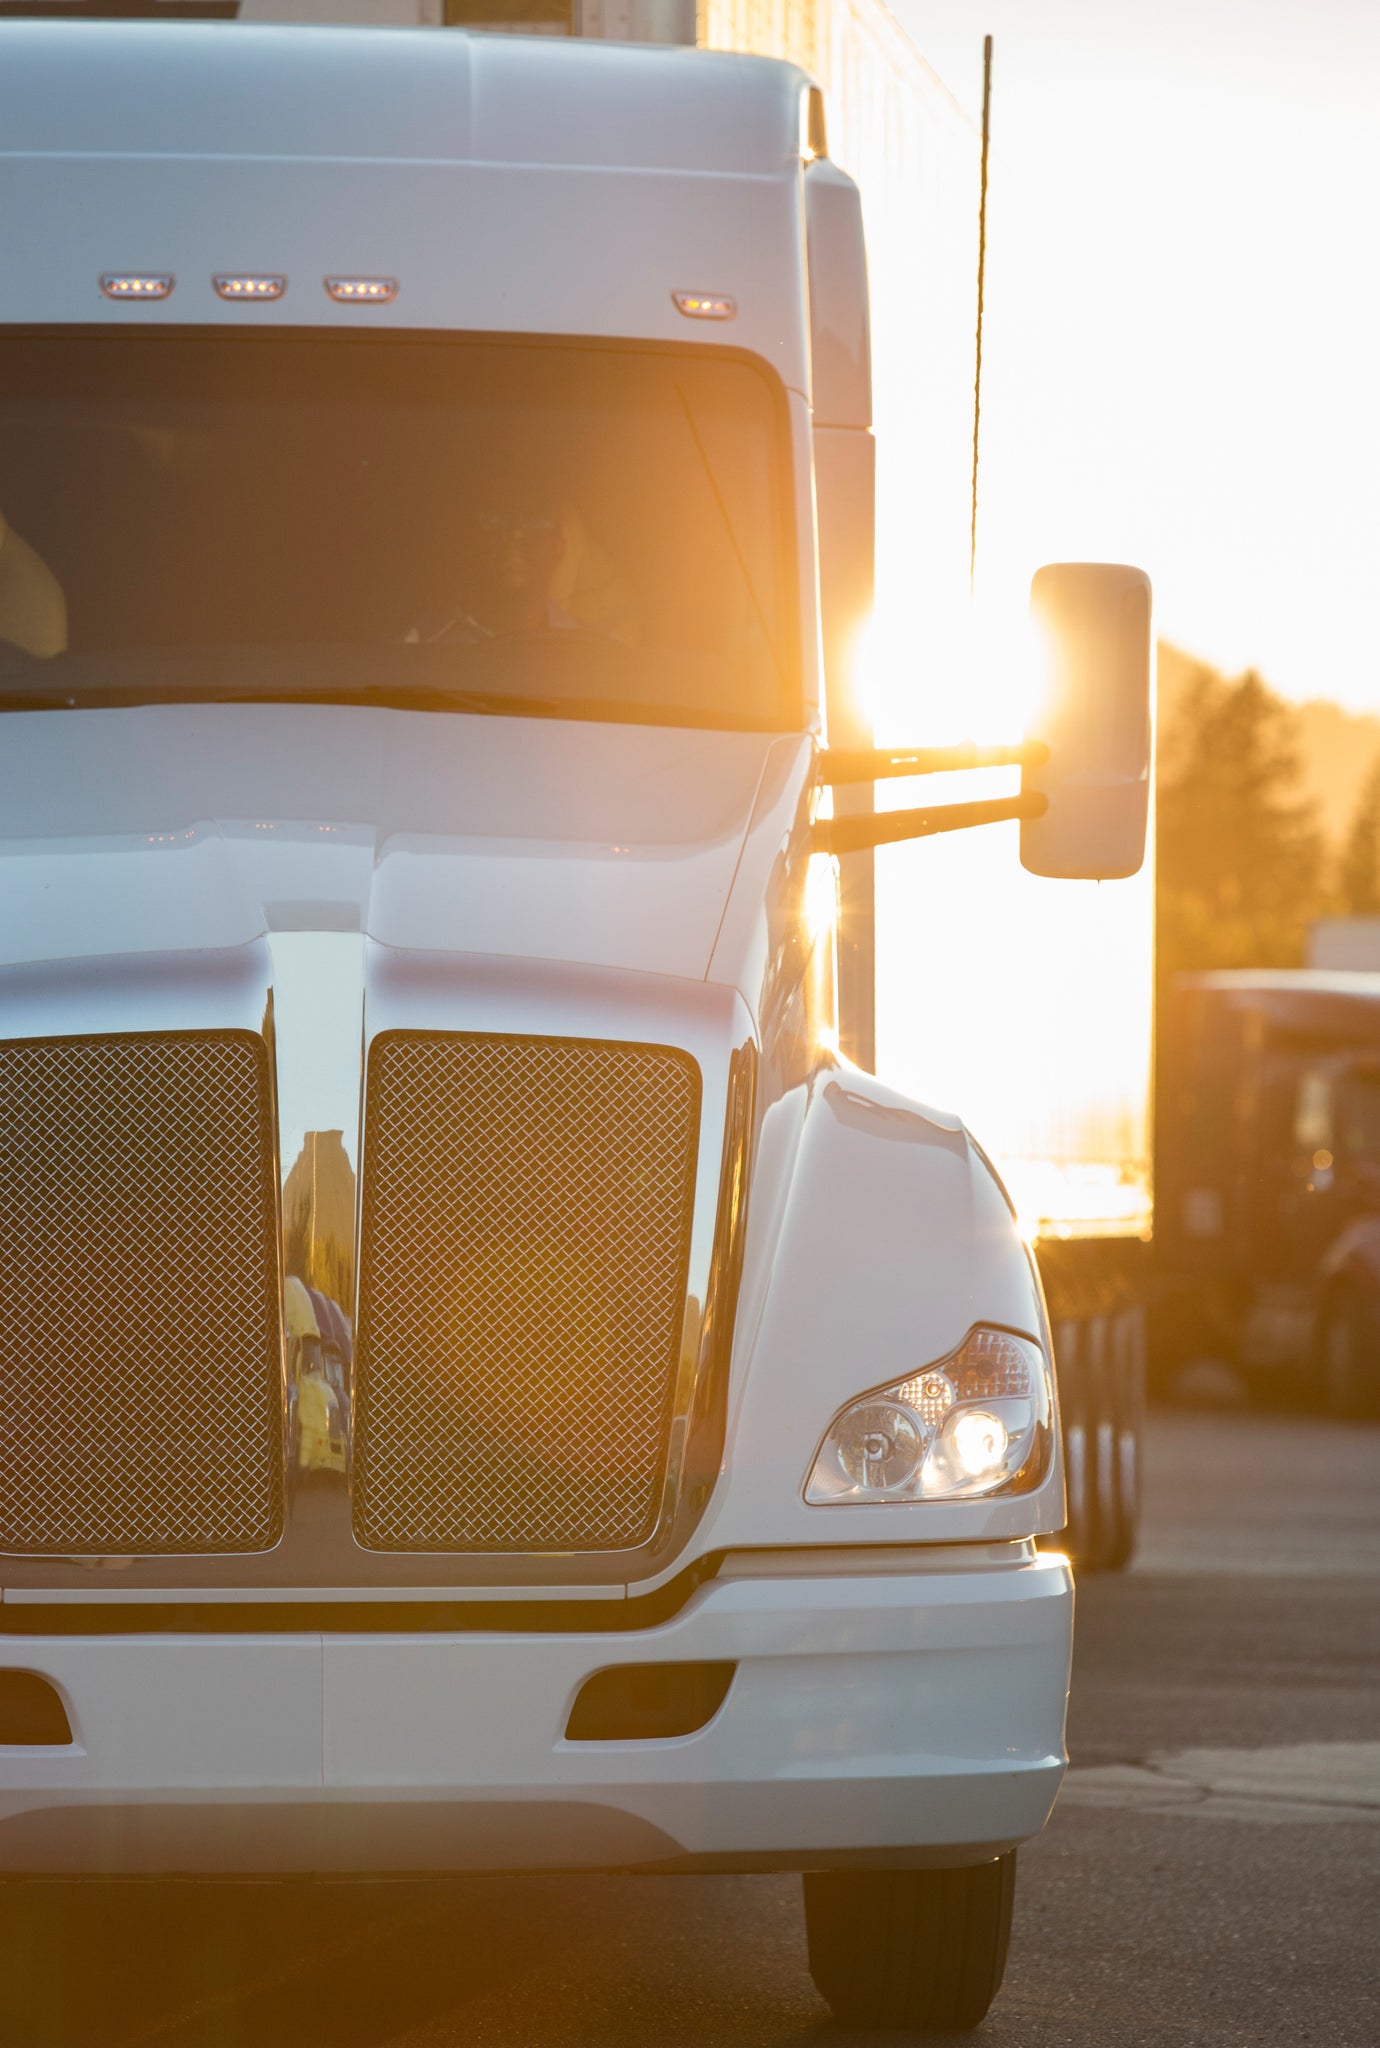 Vanguard Safety’s Response to Yellow Trucking Company's Shutdown